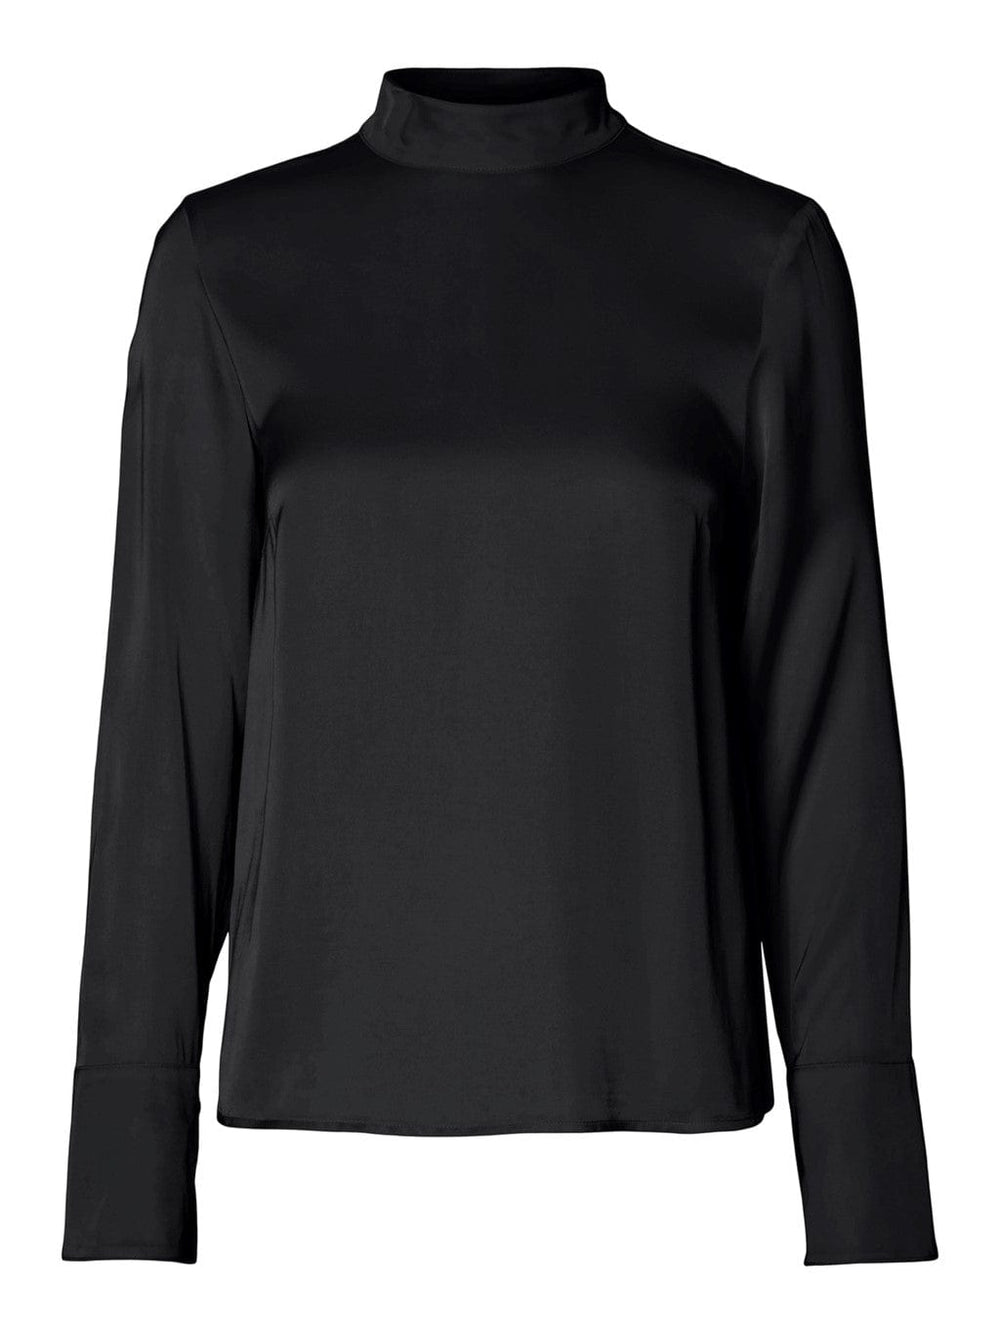 Ivy Ls Satin Top B Black | Skjorter og bluser | Smuk - Dameklær på nett